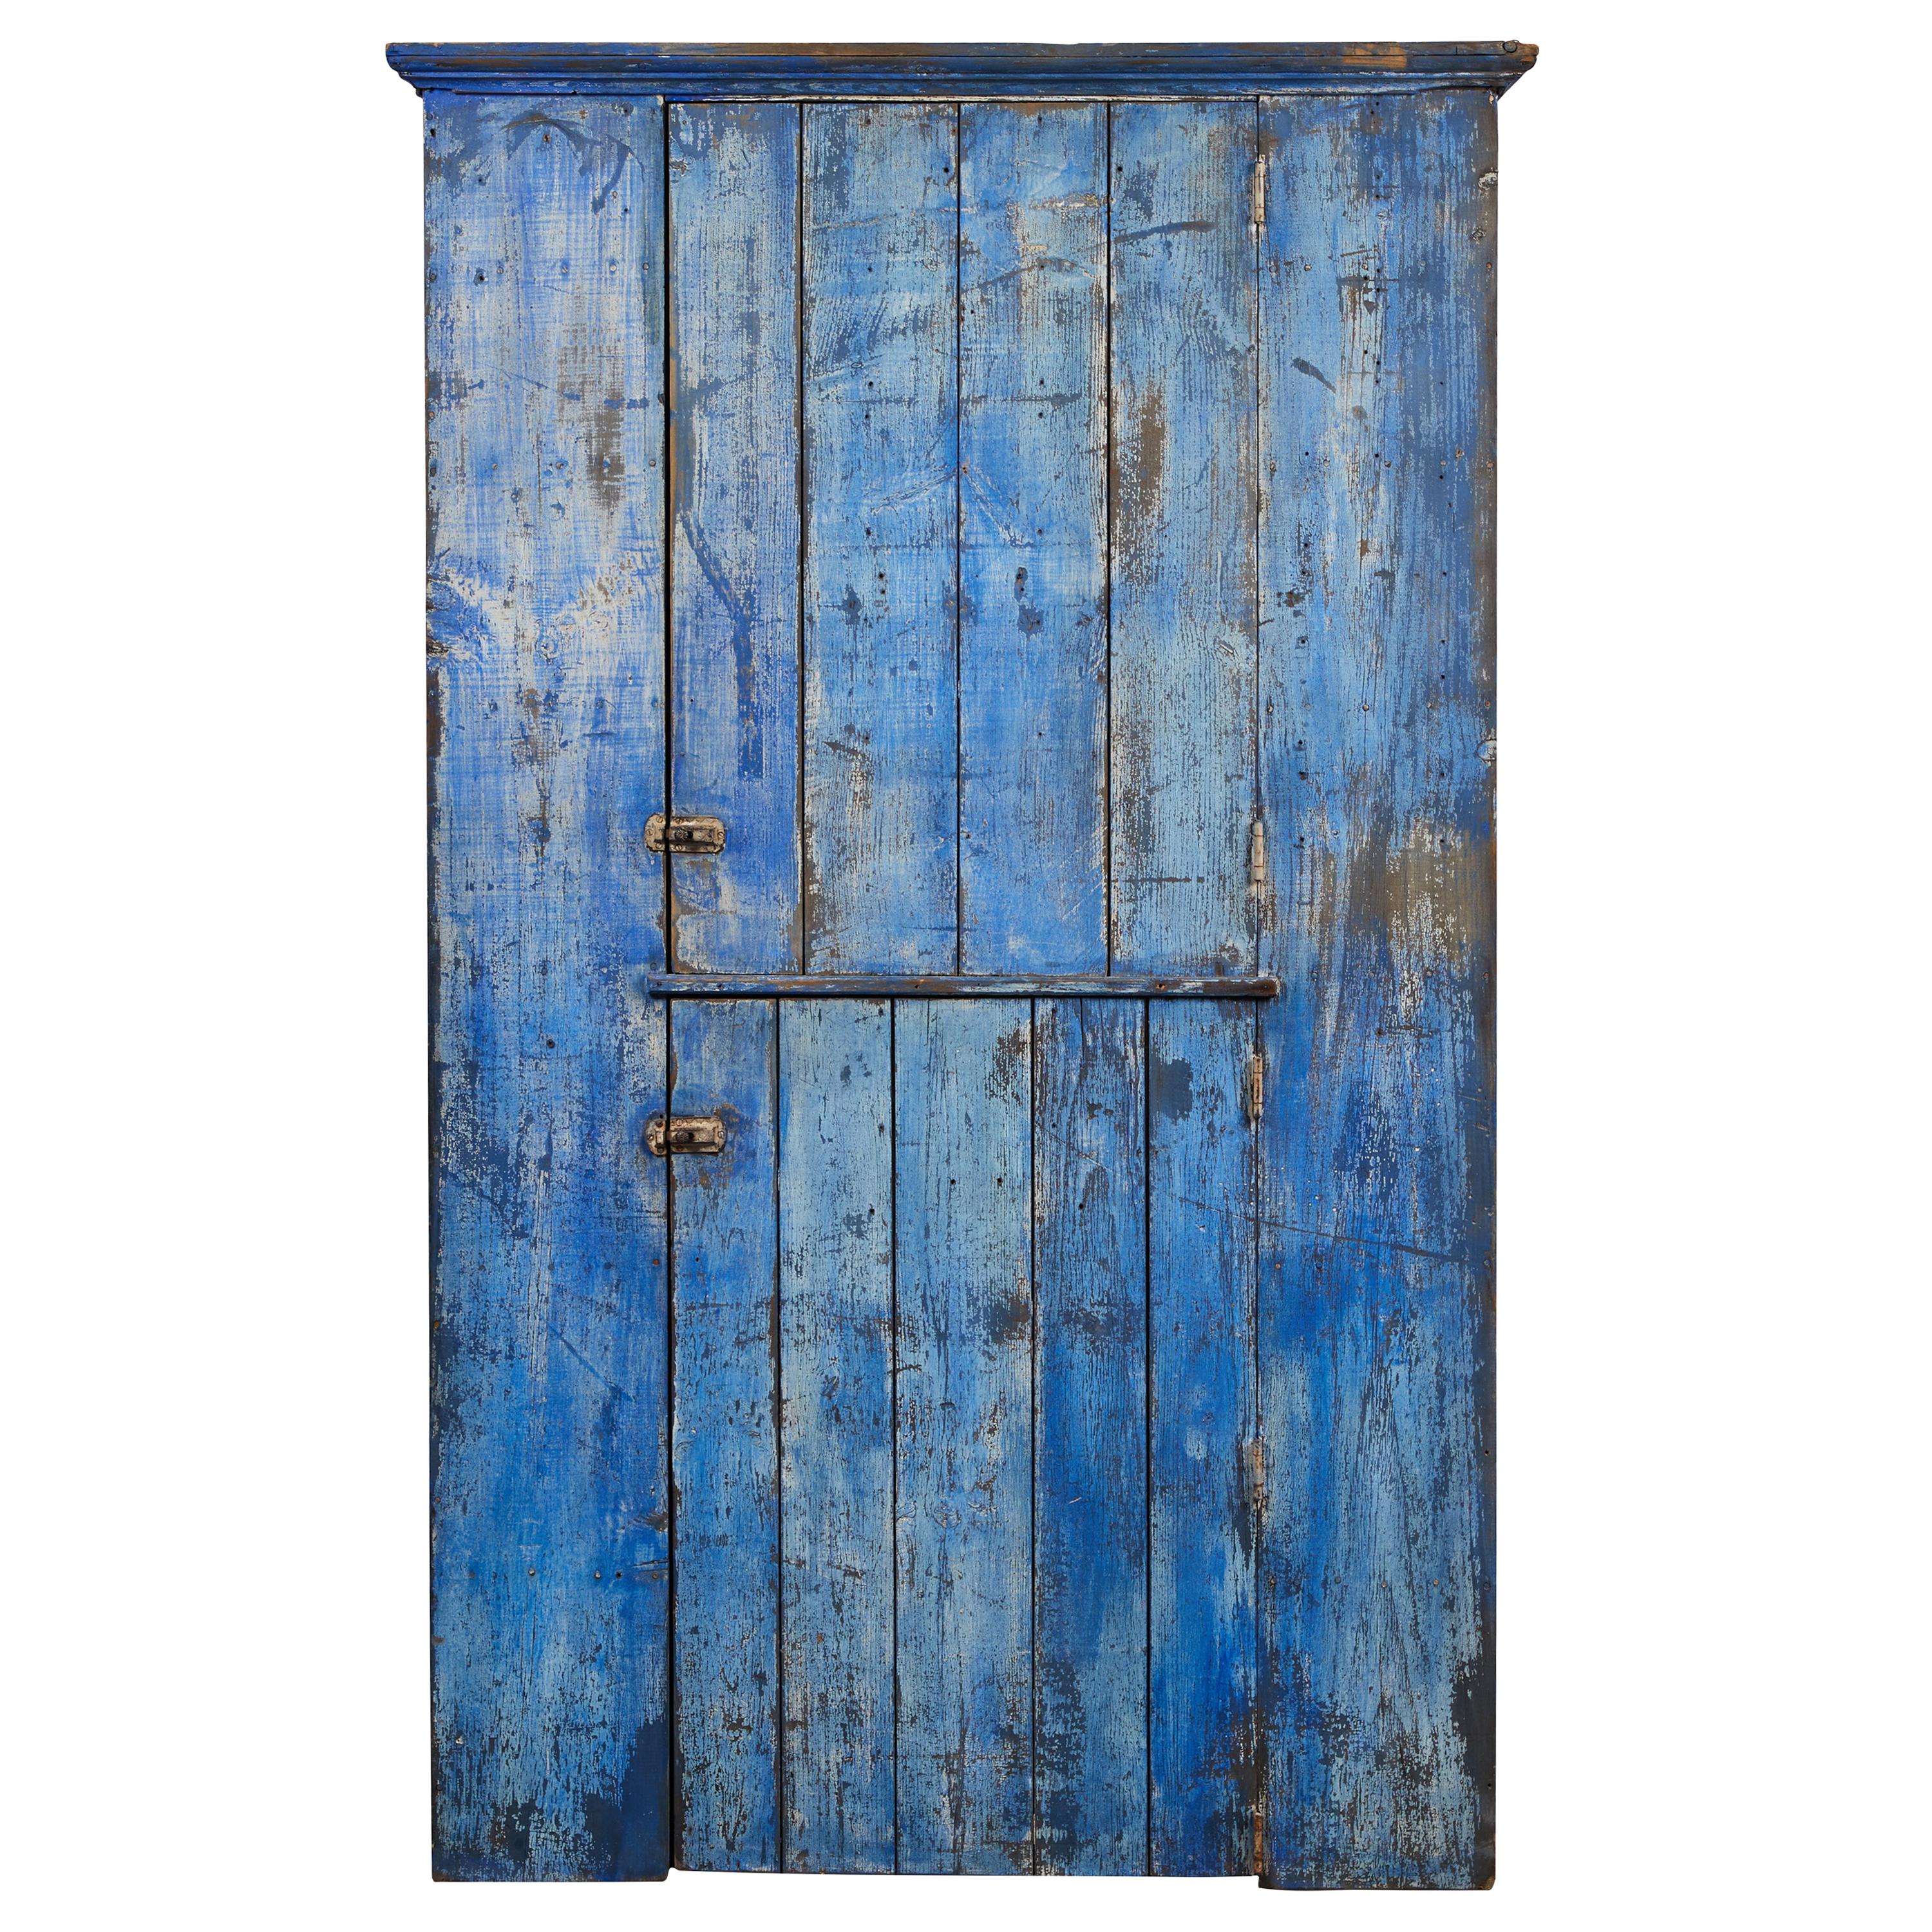 Early American Rustic Cobalt Blue Two-Door Cabinet